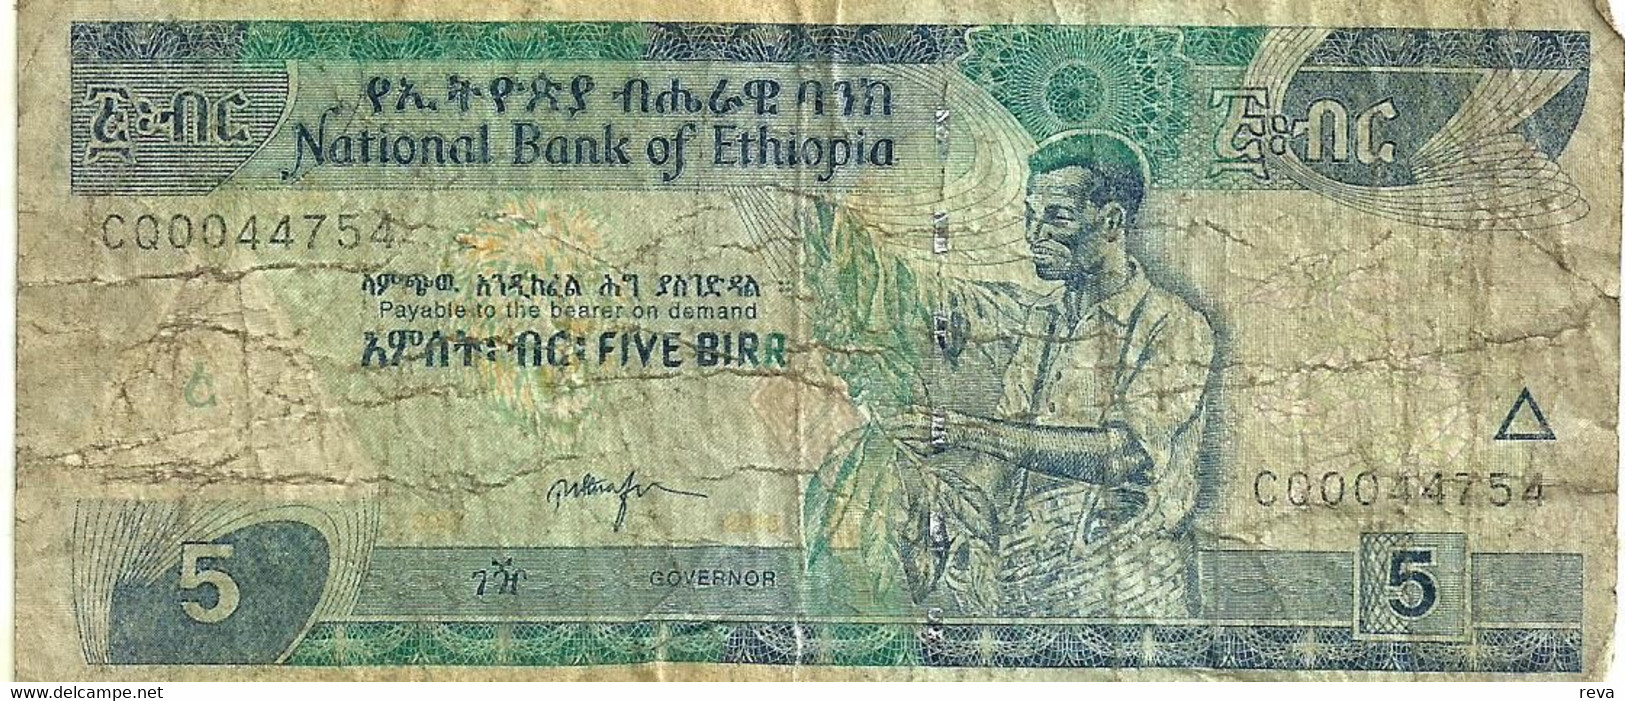 ETHIOPIA 5 BIRR BLUE  MAN FRONT & LANDSCAPE BACK ND(2000)P.47a SIG7. VG READ DESCRIPTION - Ethiopia